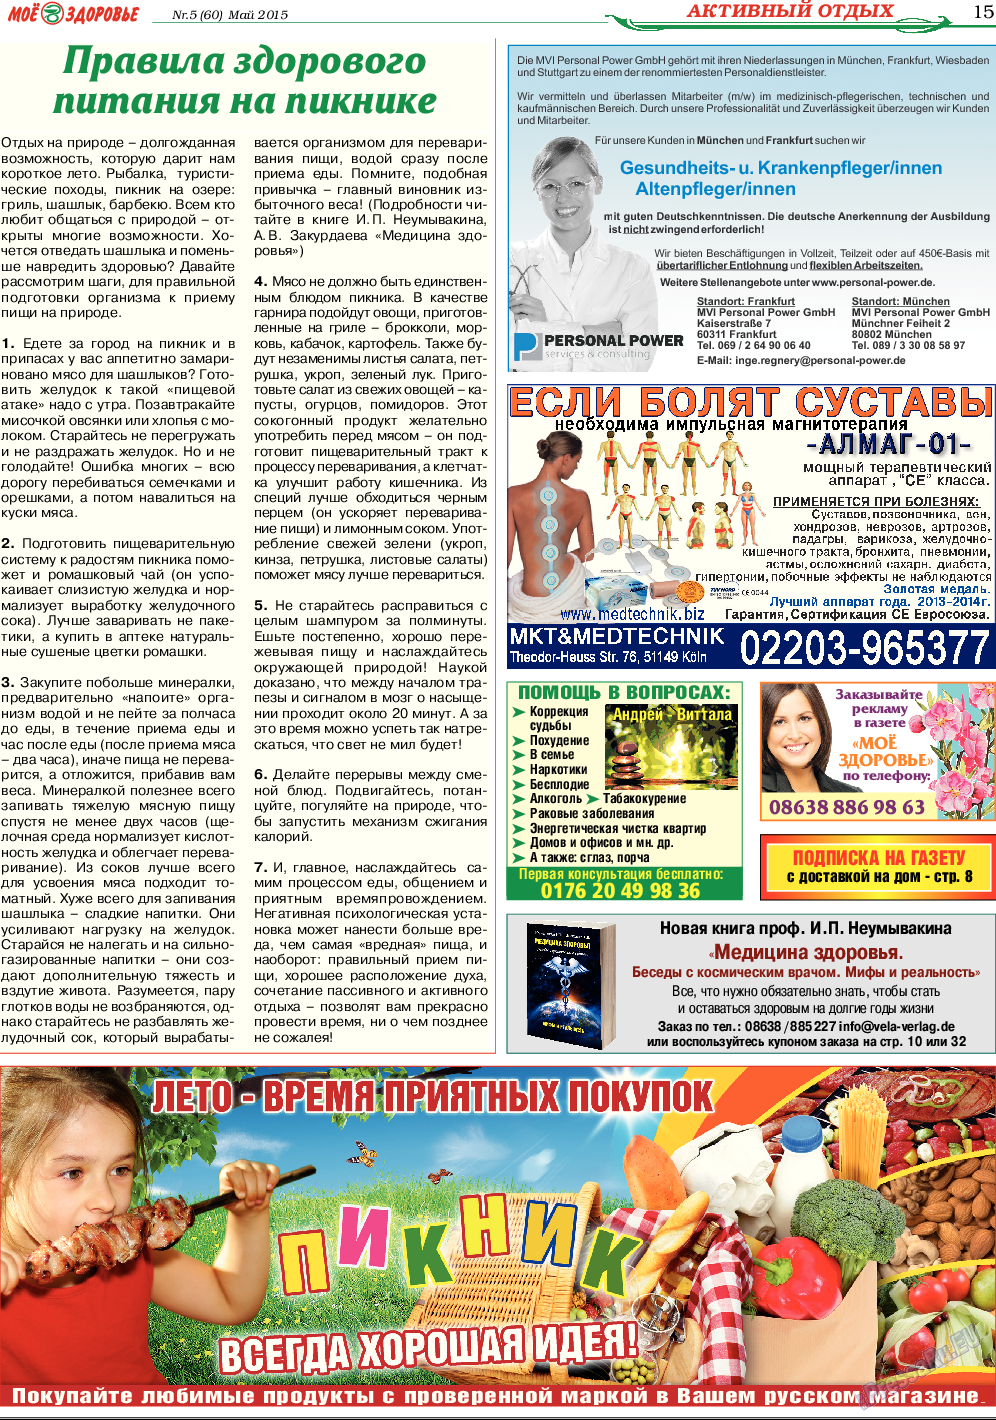 Кругозор, газета. 2015 №6 стр.15